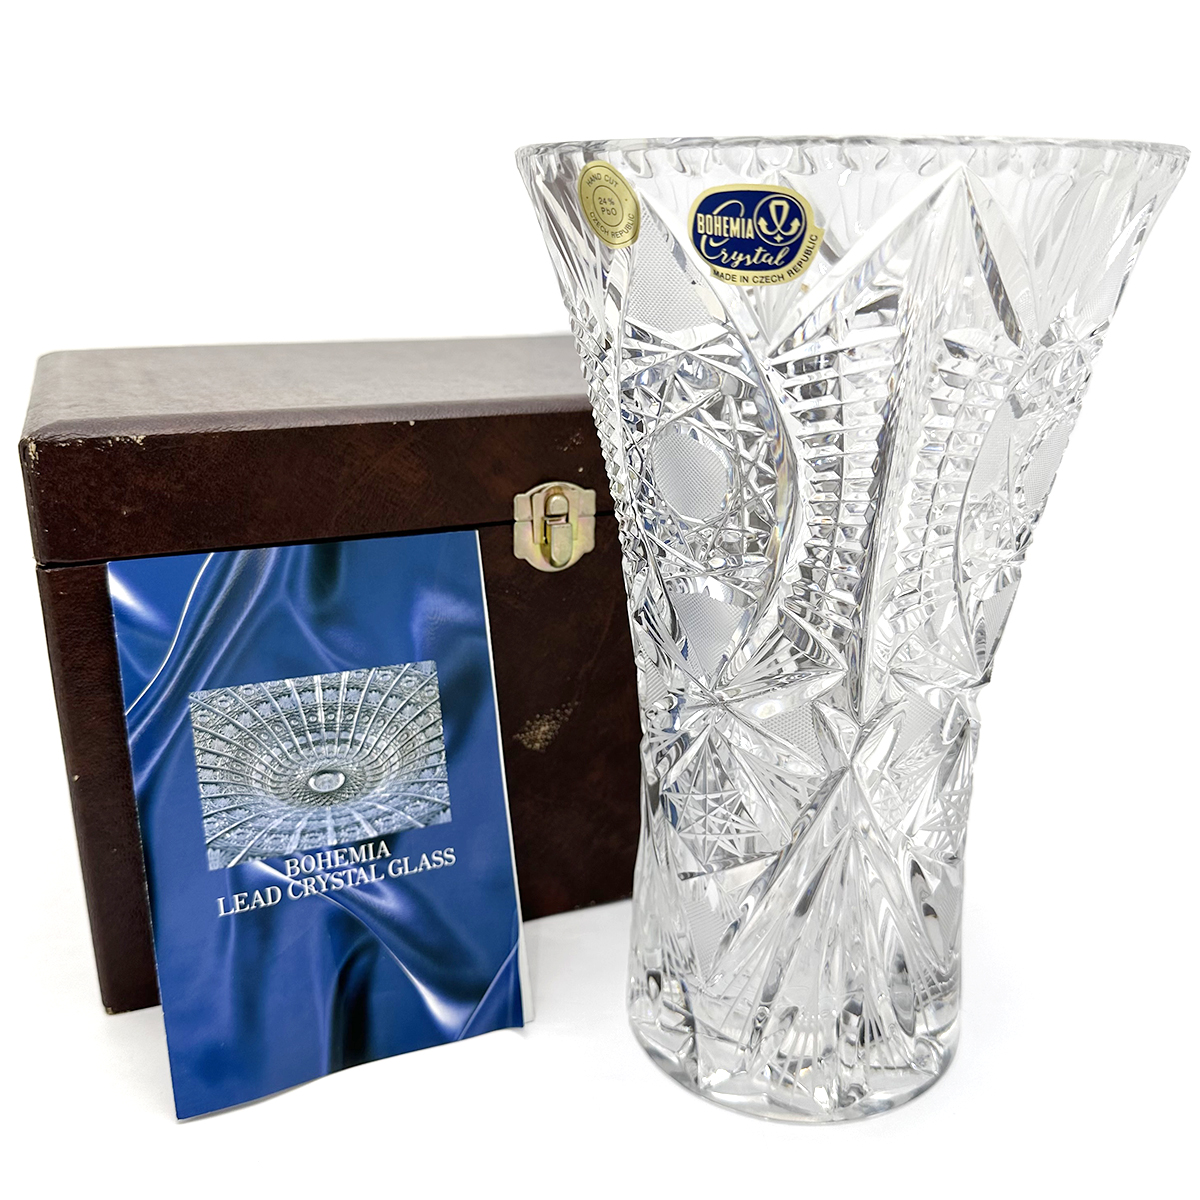 ボヘミア クリスタル(BOHEMIA CRYSTAL) 花瓶 クリスタルガラス 専用ケース